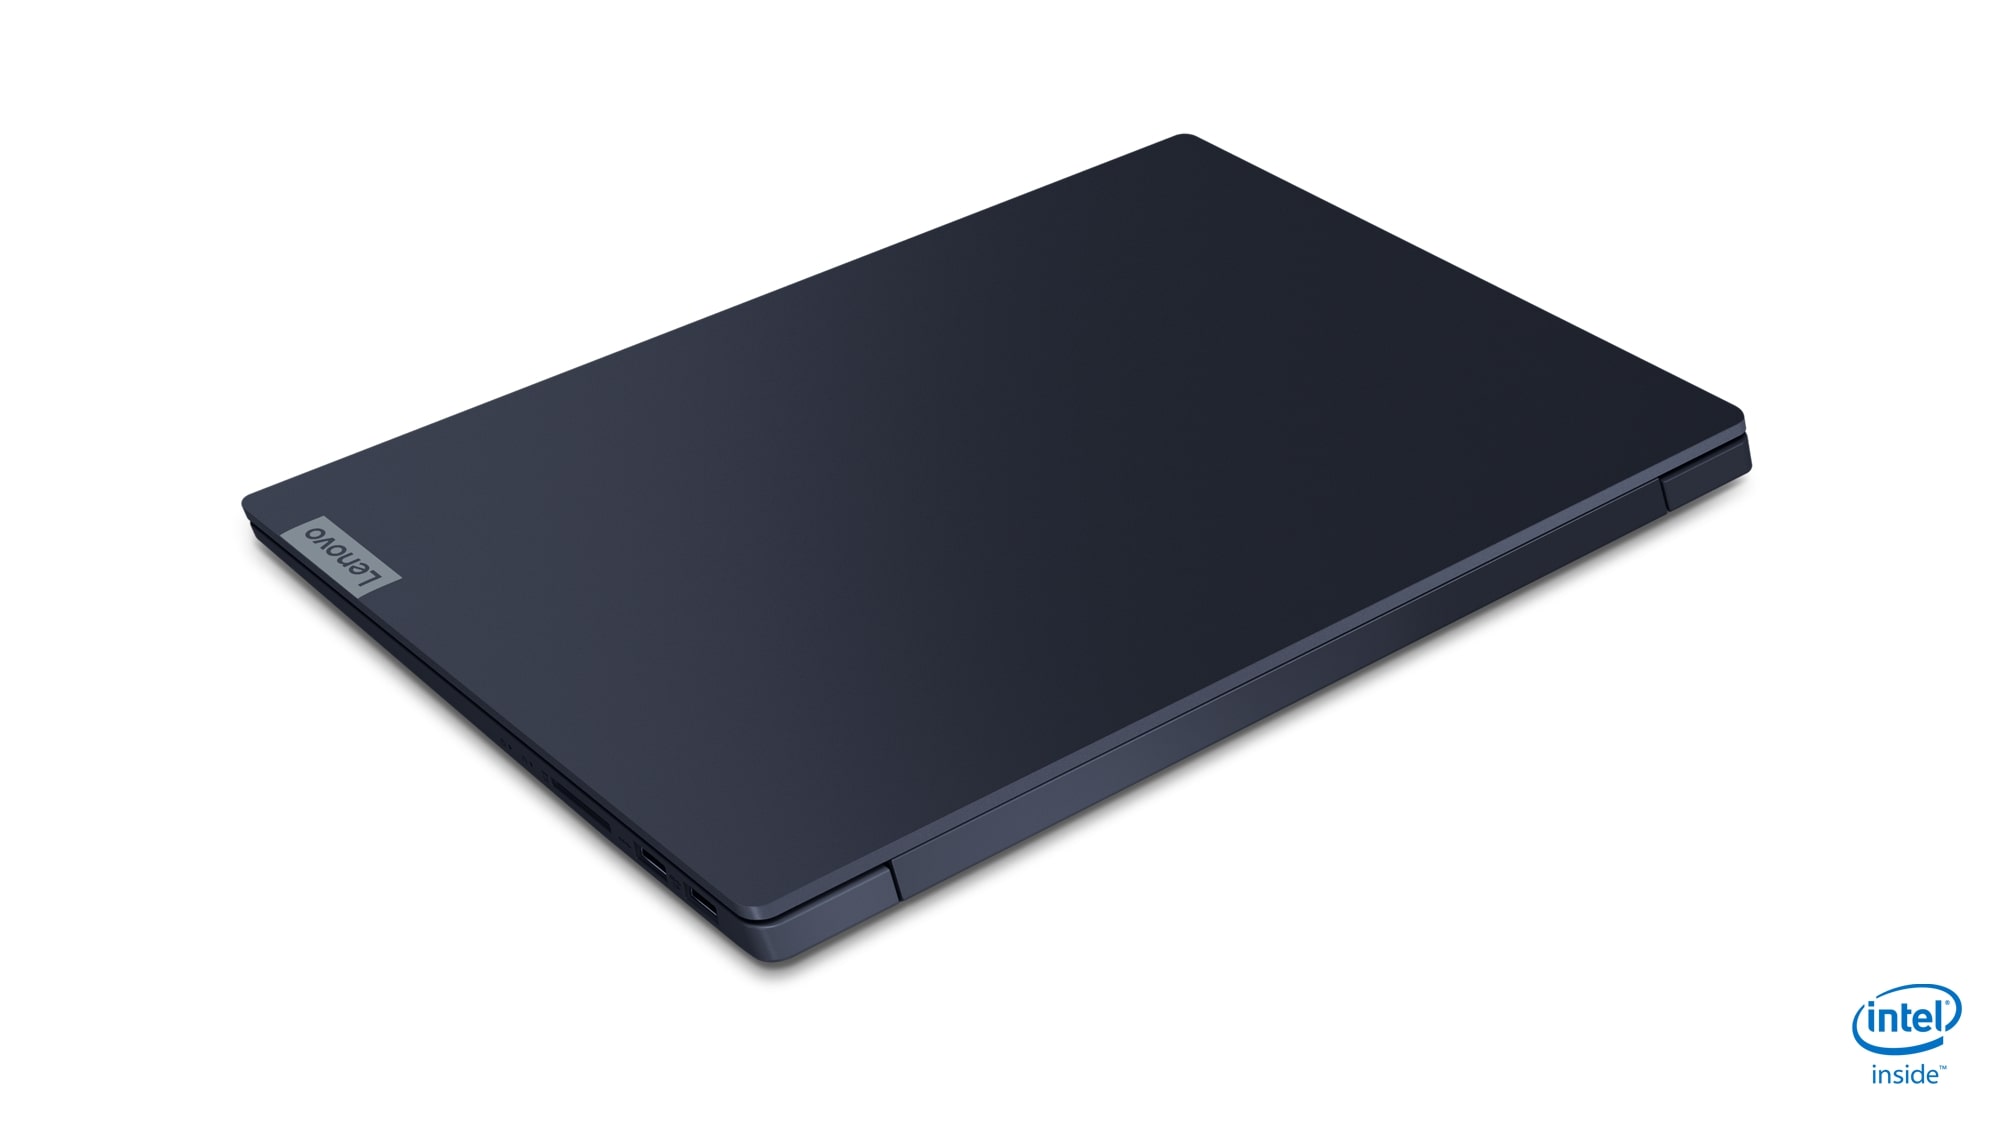 Lenovo nueva generación de laptops IdeaPad en MWC 2019 | Digital Trends Español